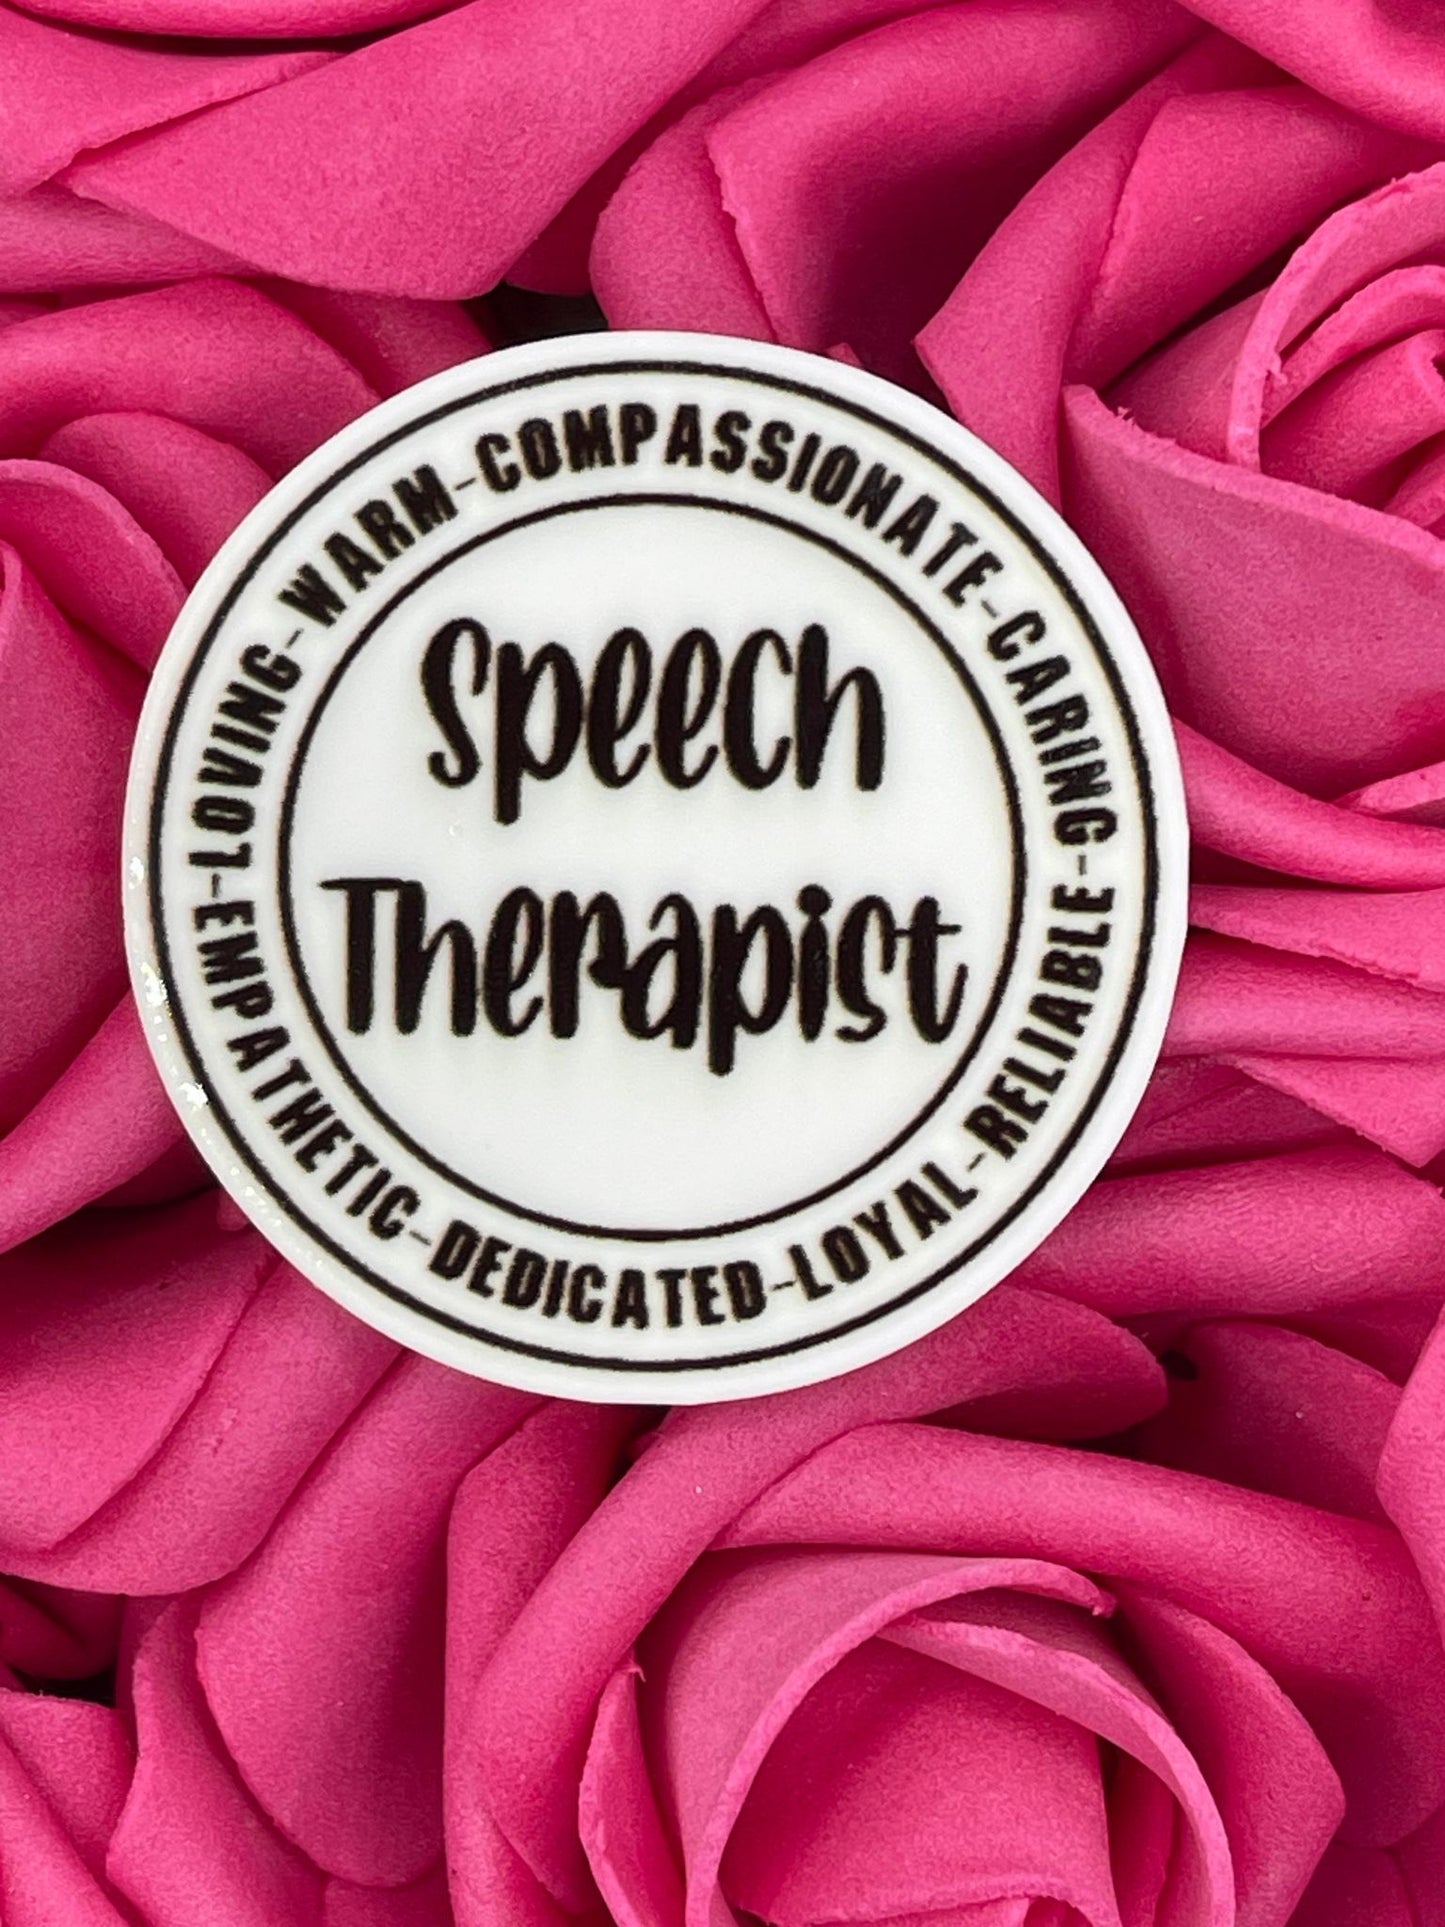 #1247 Speech Therapist